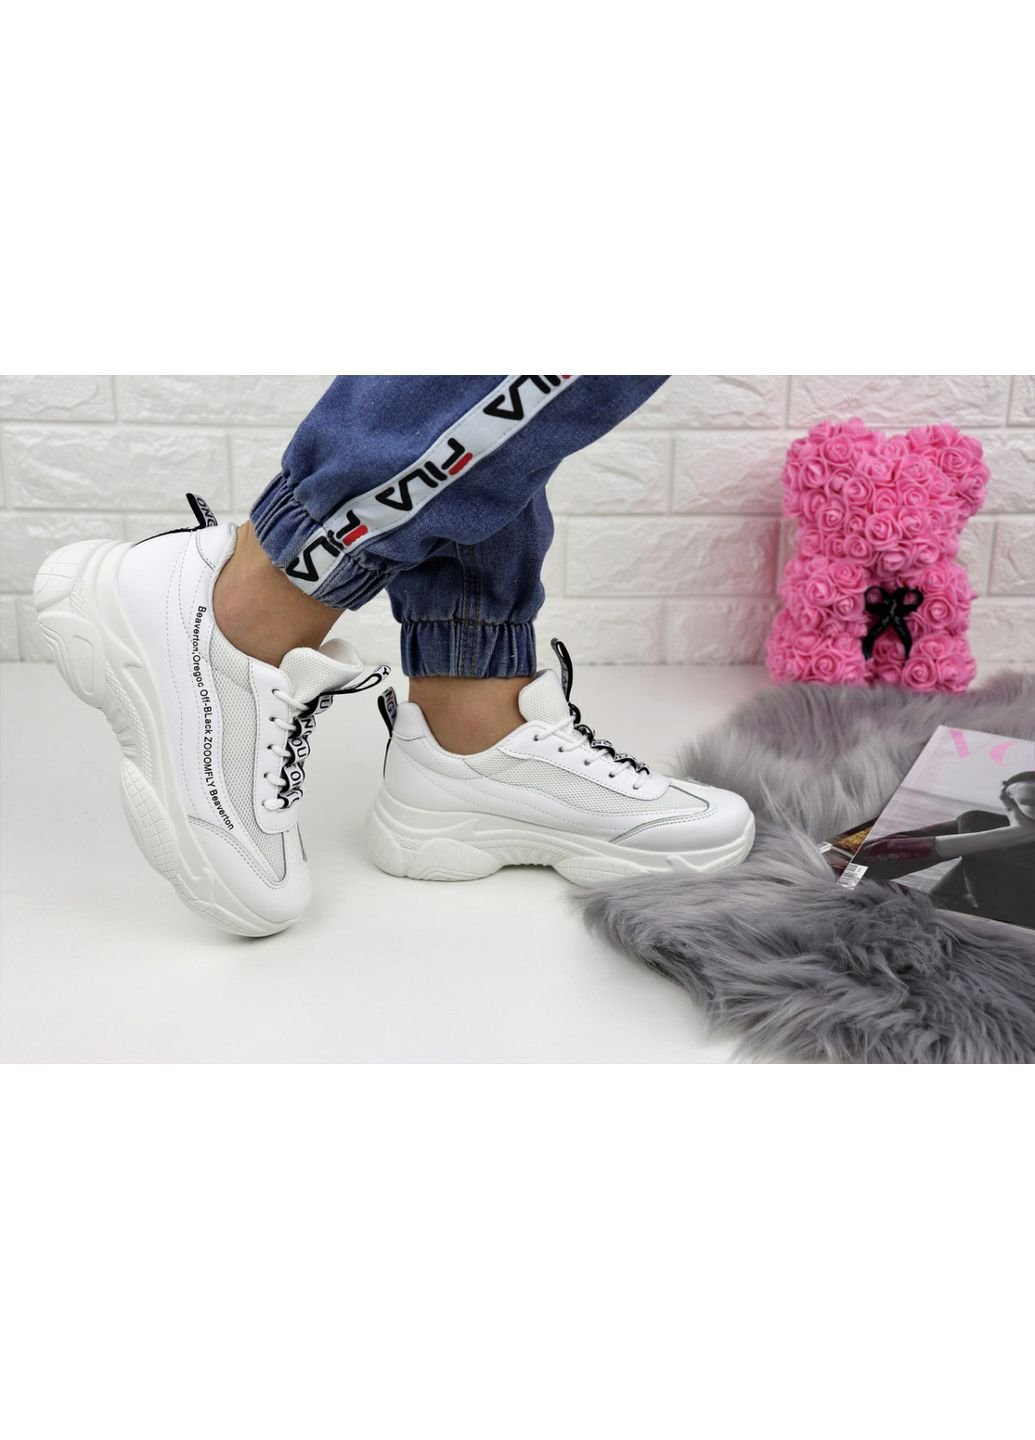 Білі осінні жіночі кросівки tinoa 1151 36 23 см білий Fashion